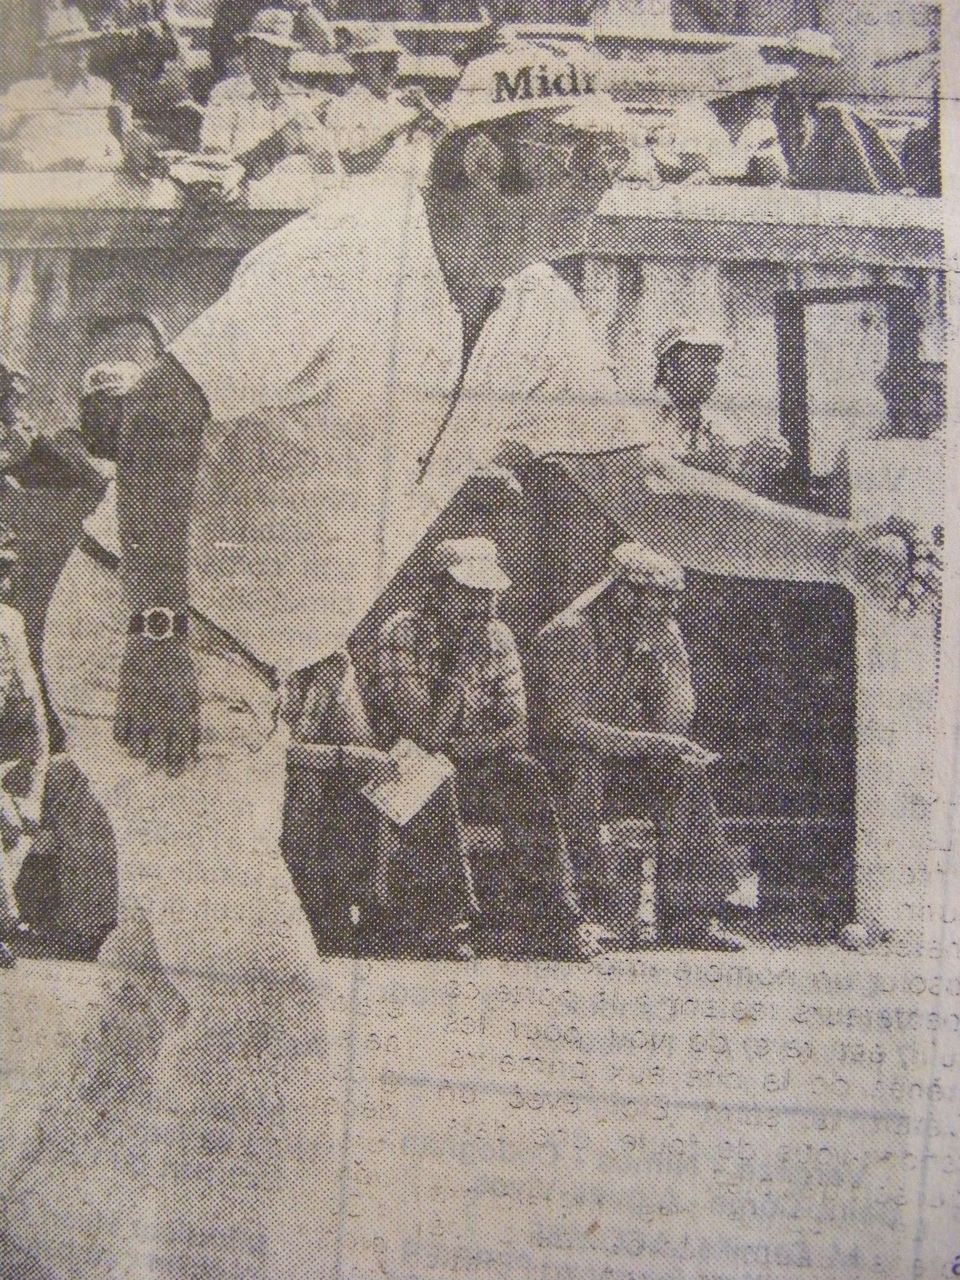 Midi Libre 1973 Demi-finale dans les arènes de Nimes (Photo archives Midi Libre)